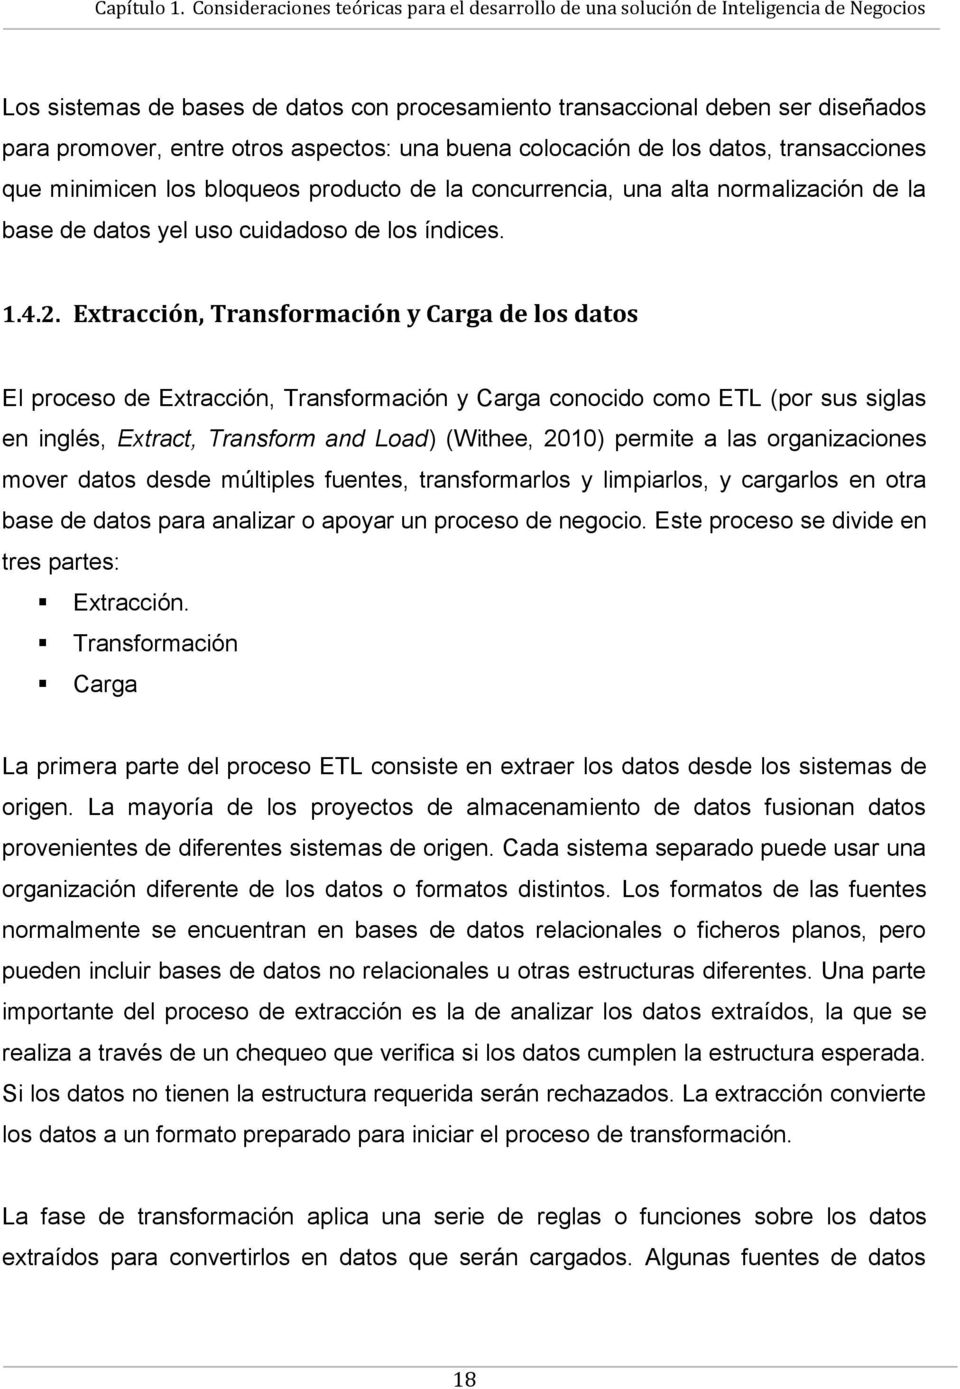 Extracción, Transformación y Carga de los datos El proceso de Extracción, Transformación y Carga conocido como ETL (por sus siglas en inglés, Extract, Transform and Load) (Withee, 2010) permite a las